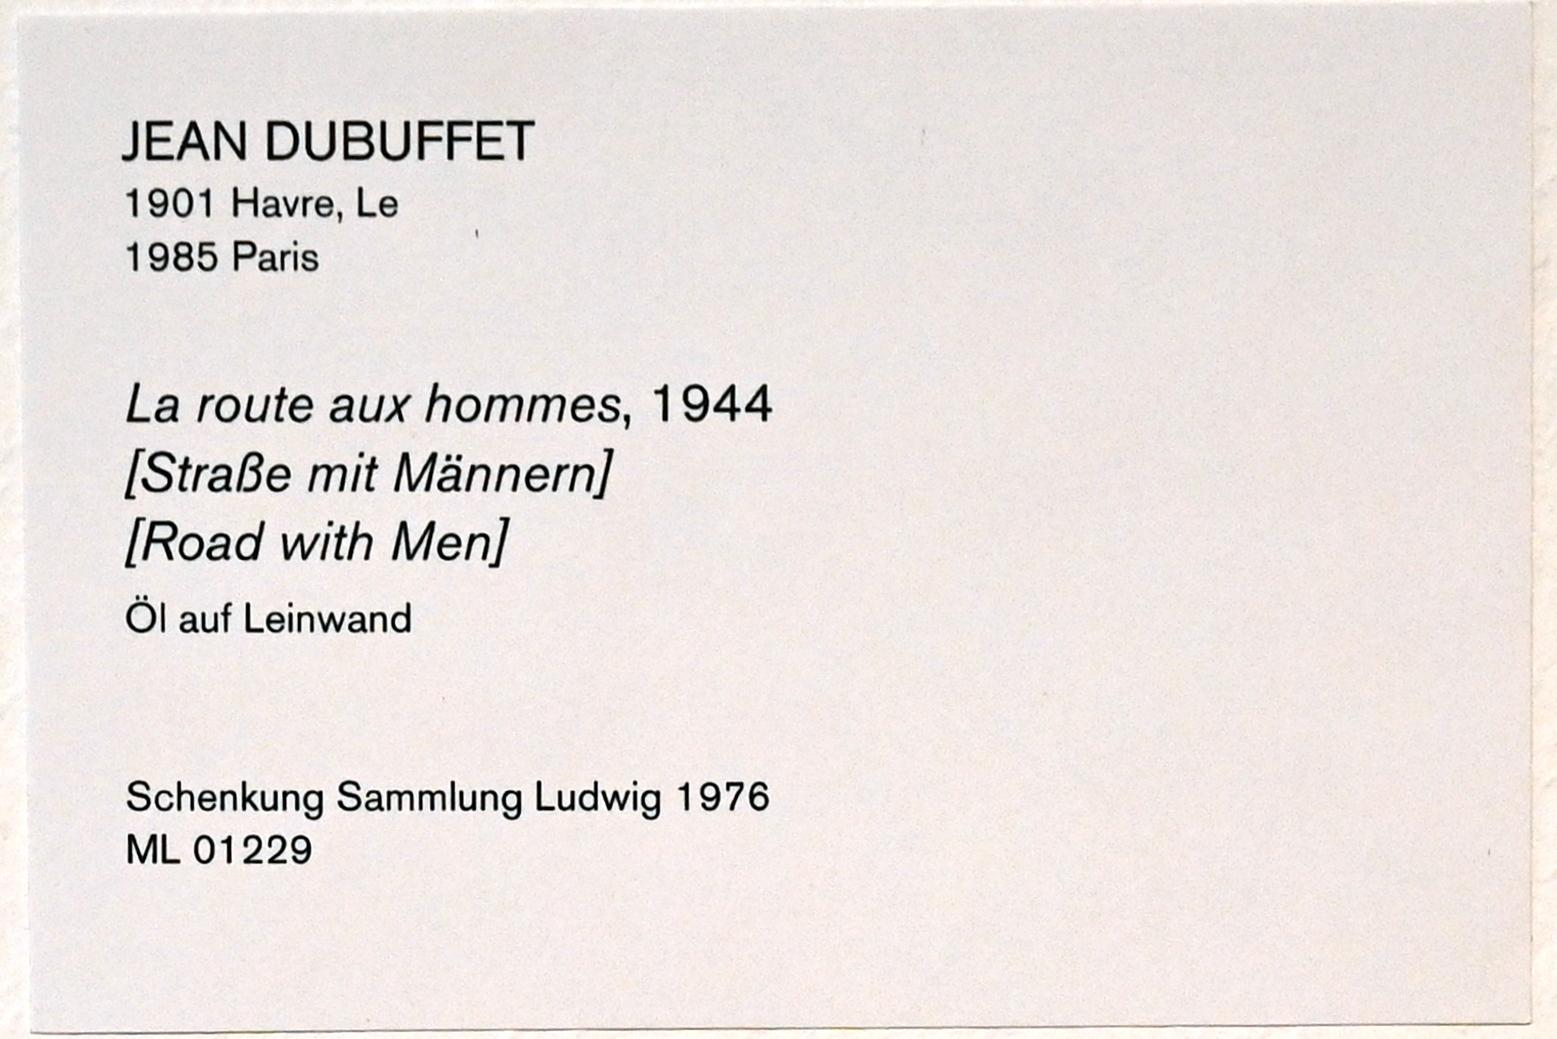 Jean Dubuffet (1943–1965), Straße mit Männern, Köln, Museum Ludwig, 01.63, 1944, Bild 2/2